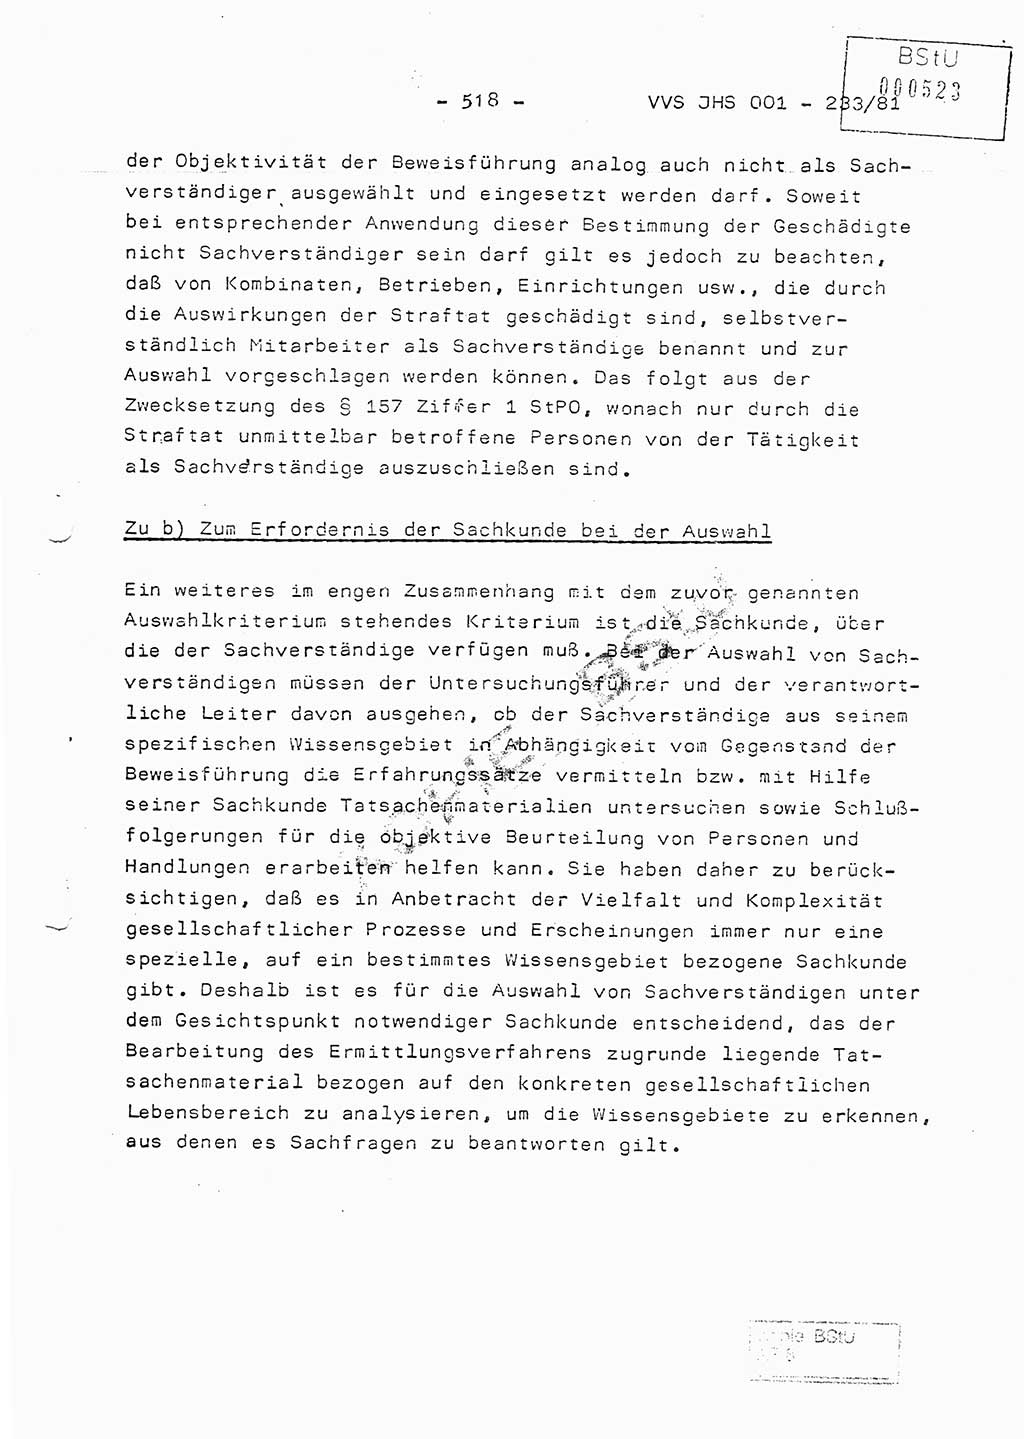 Dissertation Oberstleutnant Horst Zank (JHS), Oberstleutnant Dr. Karl-Heinz Knoblauch (JHS), Oberstleutnant Gustav-Adolf Kowalewski (HA Ⅸ), Oberstleutnant Wolfgang Plötner (HA Ⅸ), Ministerium für Staatssicherheit (MfS) [Deutsche Demokratische Republik (DDR)], Juristische Hochschule (JHS), Vertrauliche Verschlußsache (VVS) o001-233/81, Potsdam 1981, Blatt 518 (Diss. MfS DDR JHS VVS o001-233/81 1981, Bl. 518)